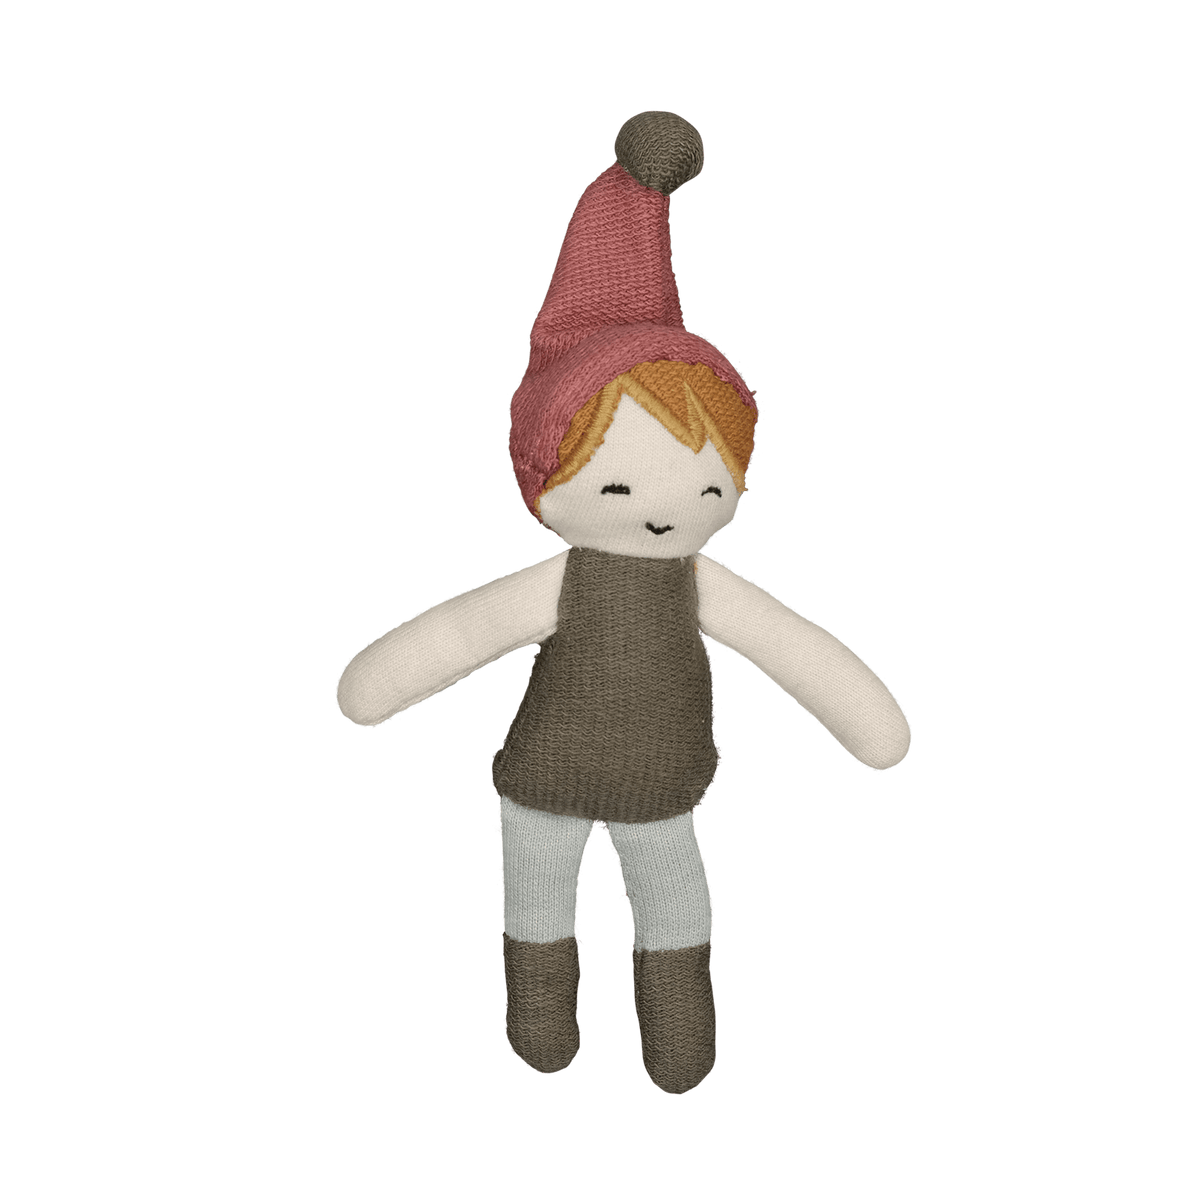 Pocket Friend Christmas Doll - Elf Boy, 14 cm